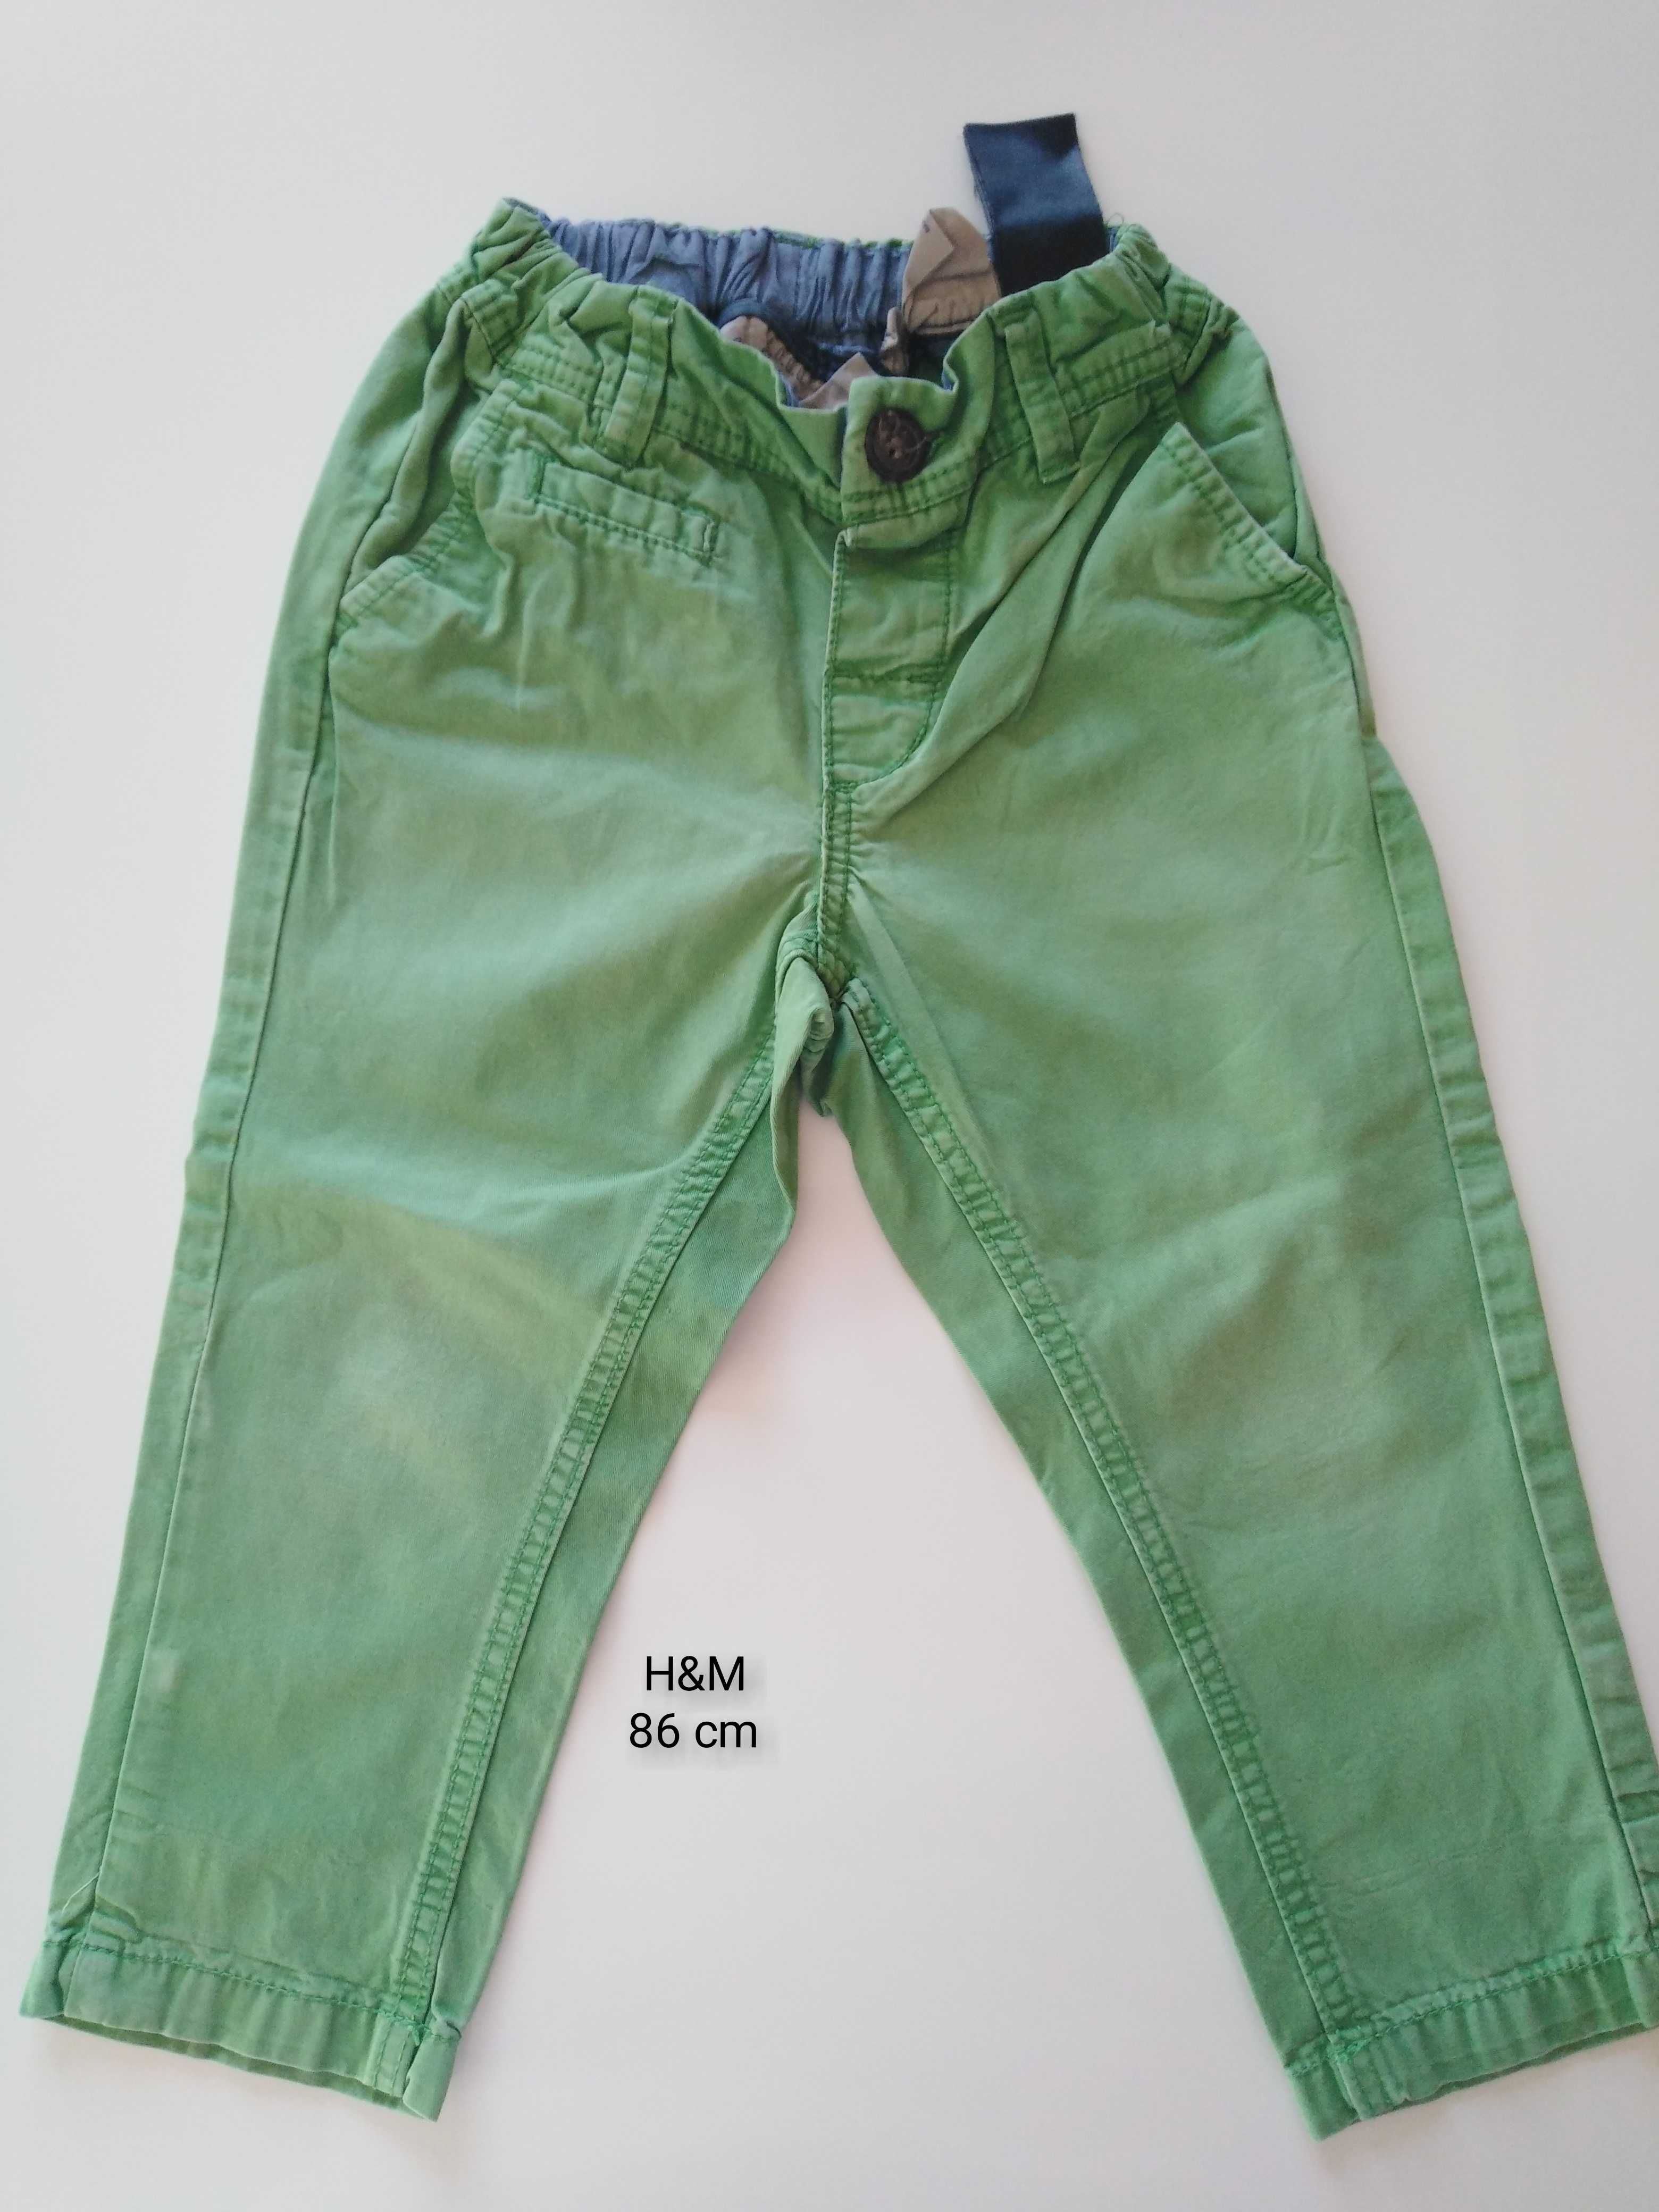 Spodnie dla chłopca H&M 86cm